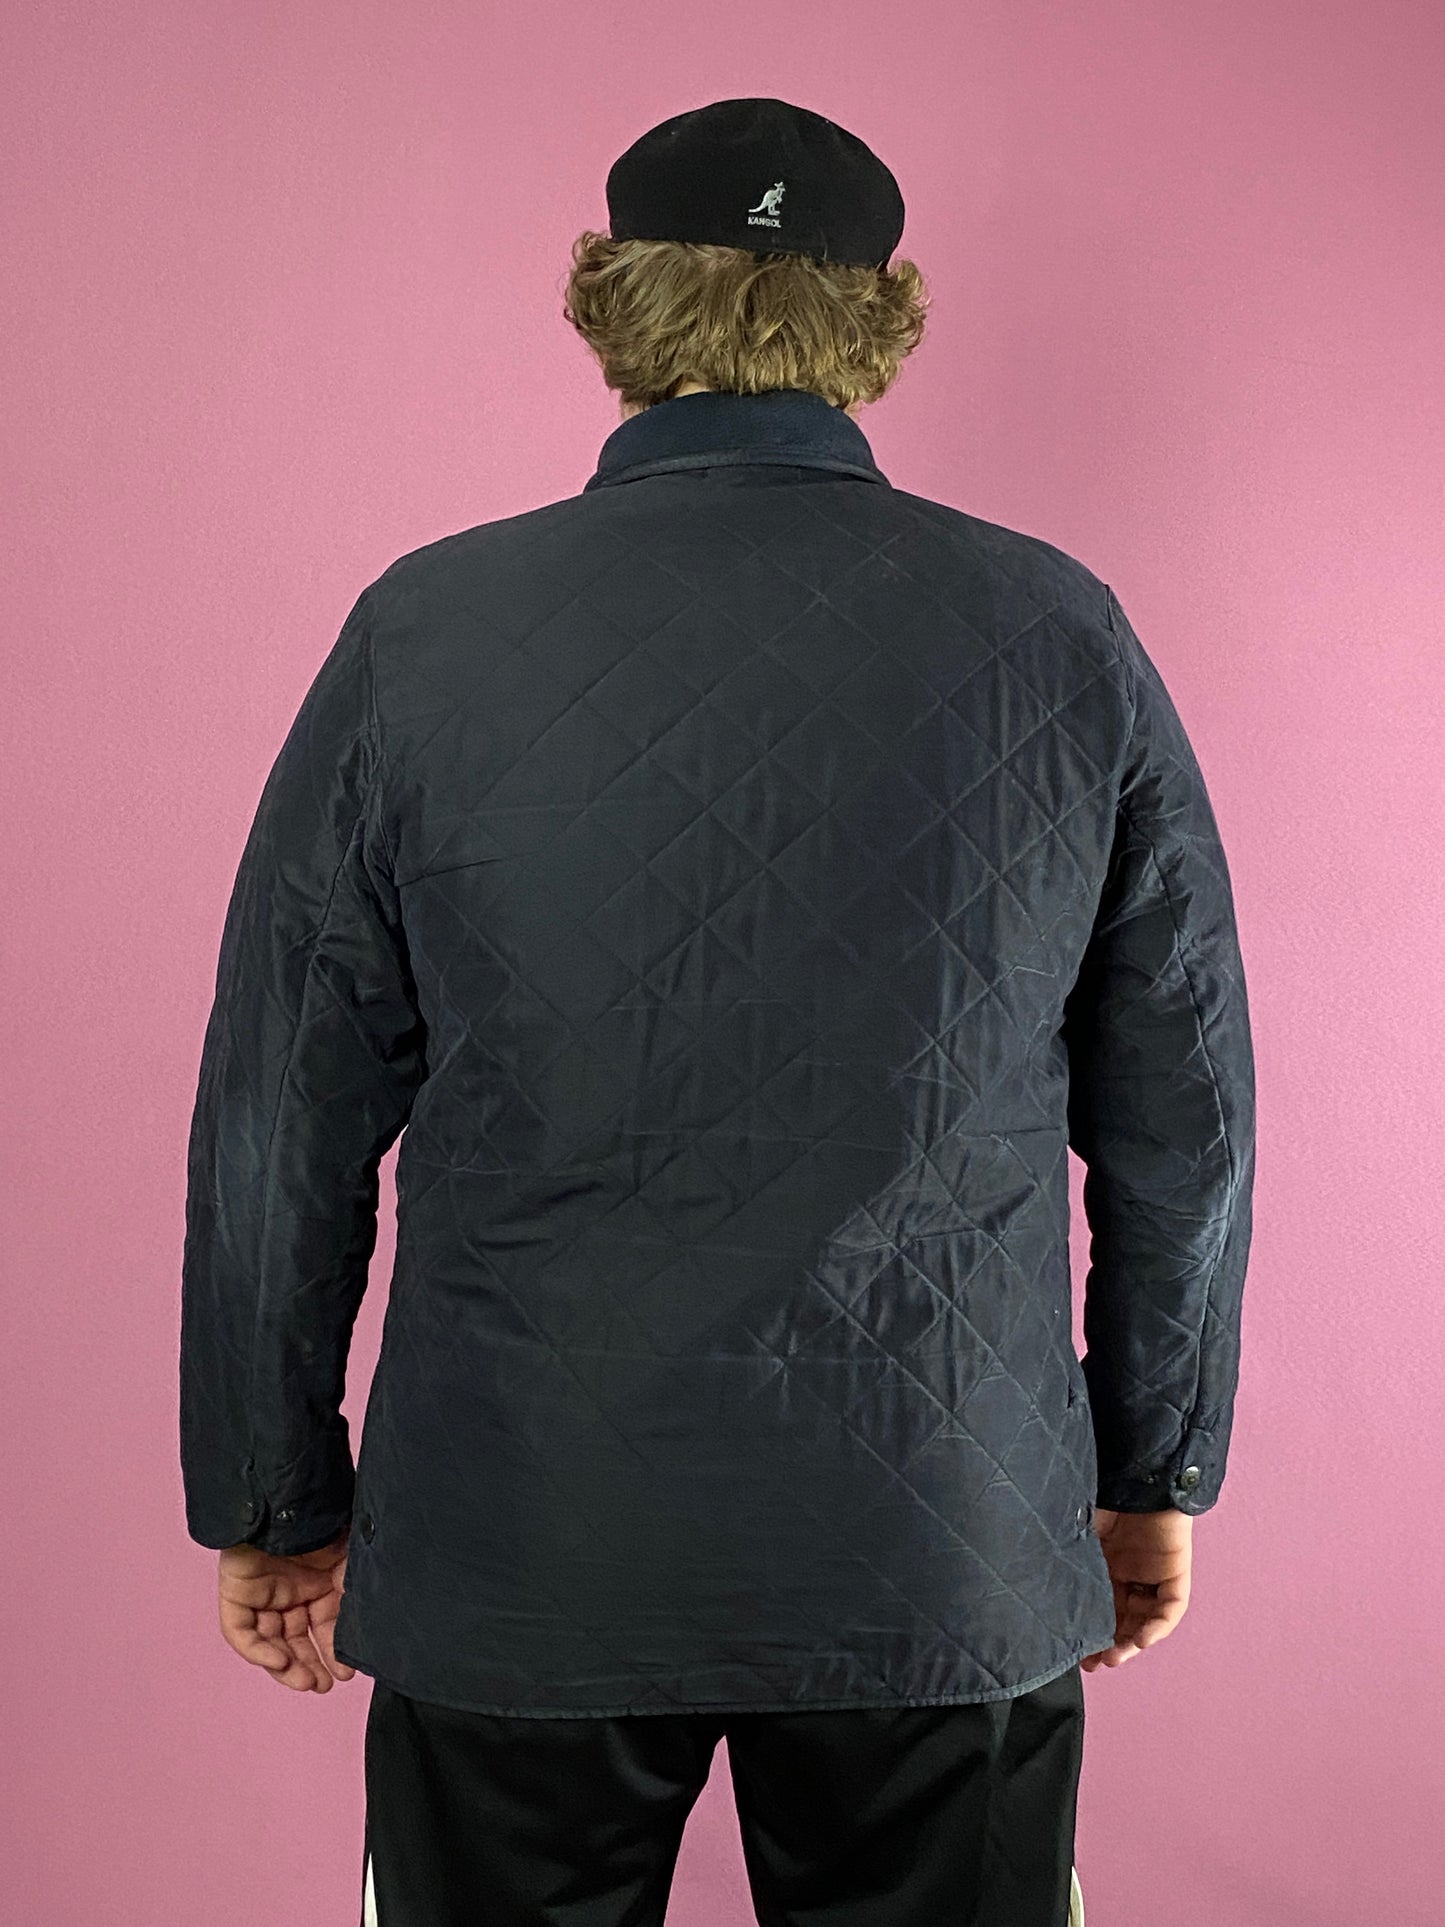 Barbour Vintage Men's Quilted Jacket - XL Black Polyester Blend